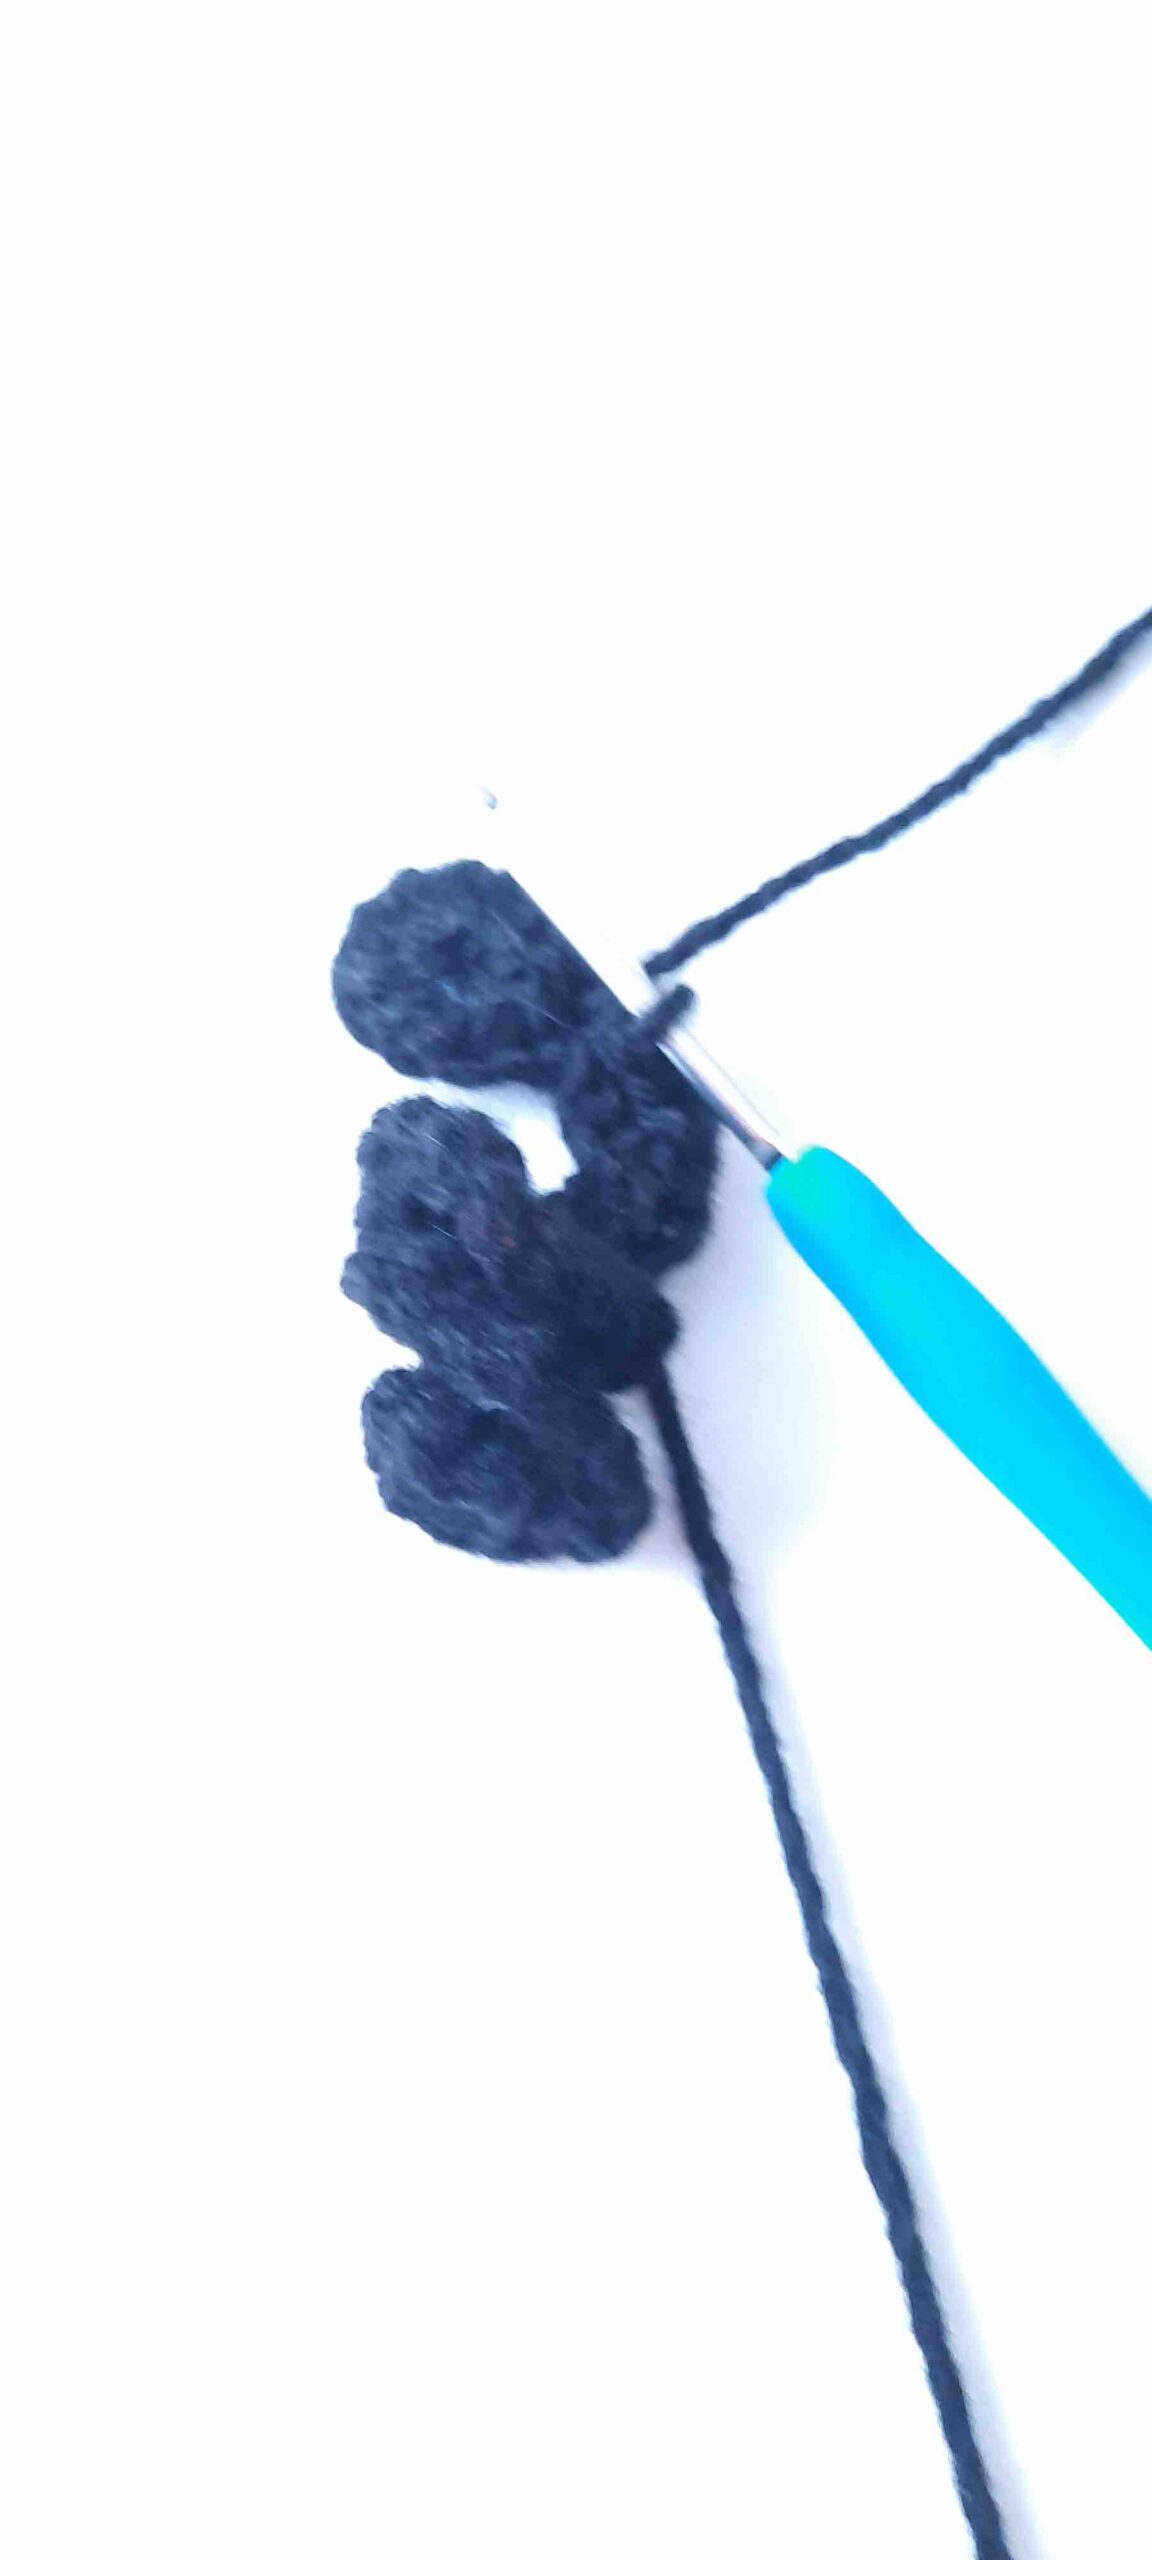 black cat crochet pattern easy